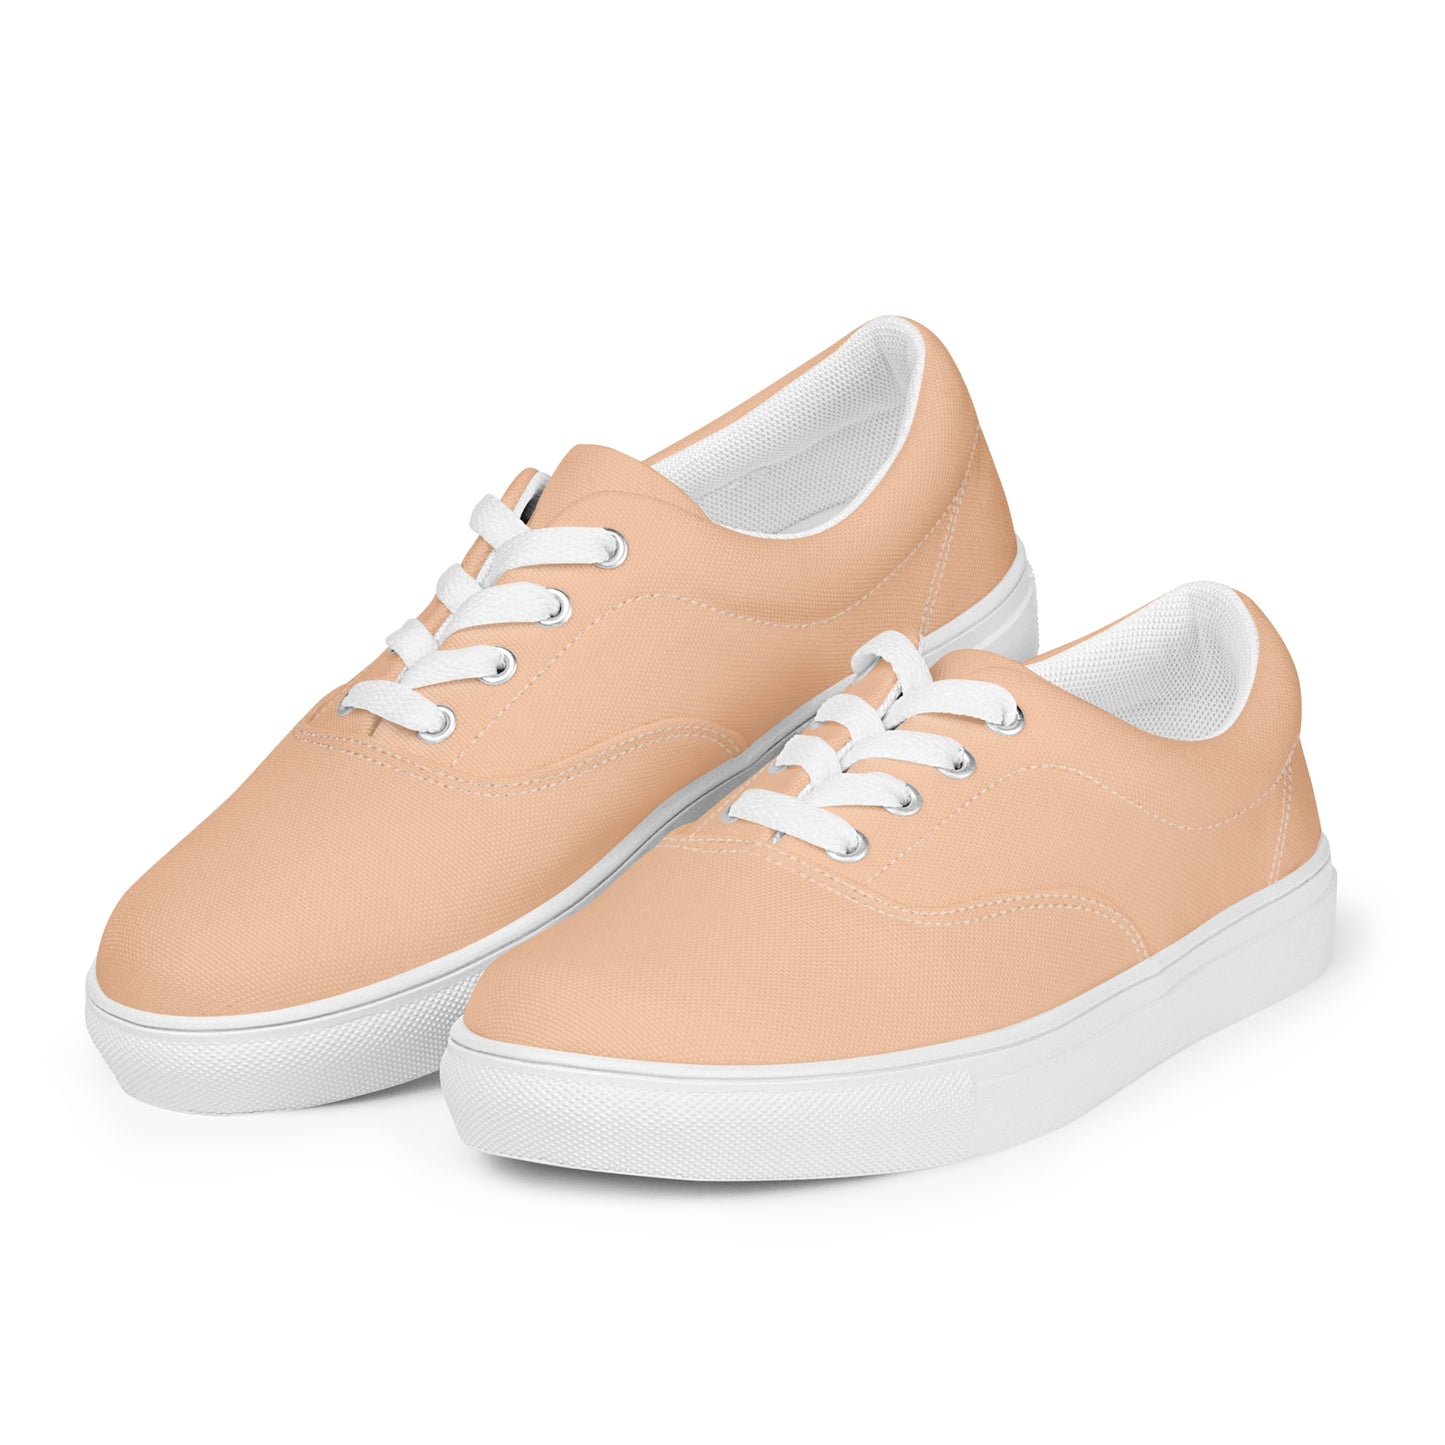 Women’s Peach Lace-up Canvas Shoes